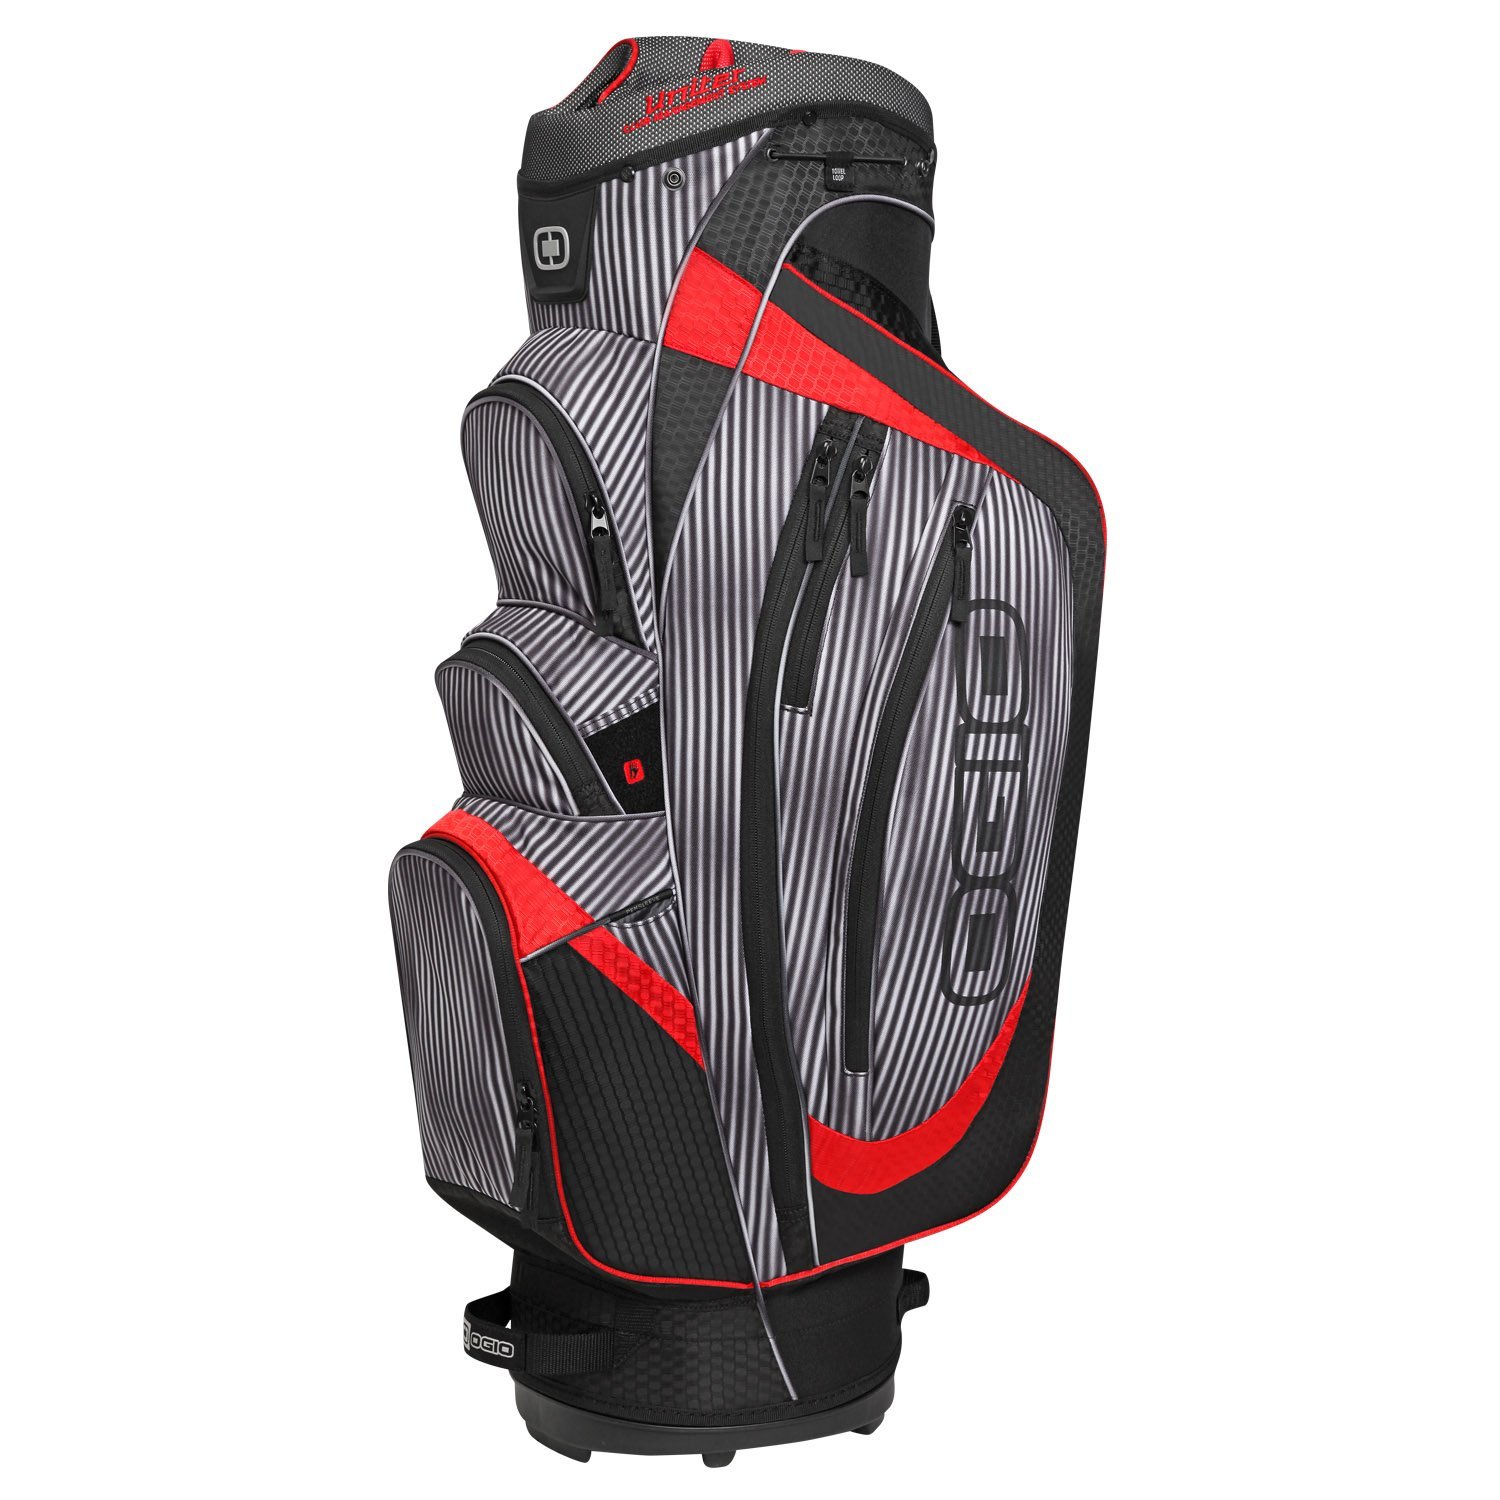 Mens 2015 Shredder Golf Cart Bags